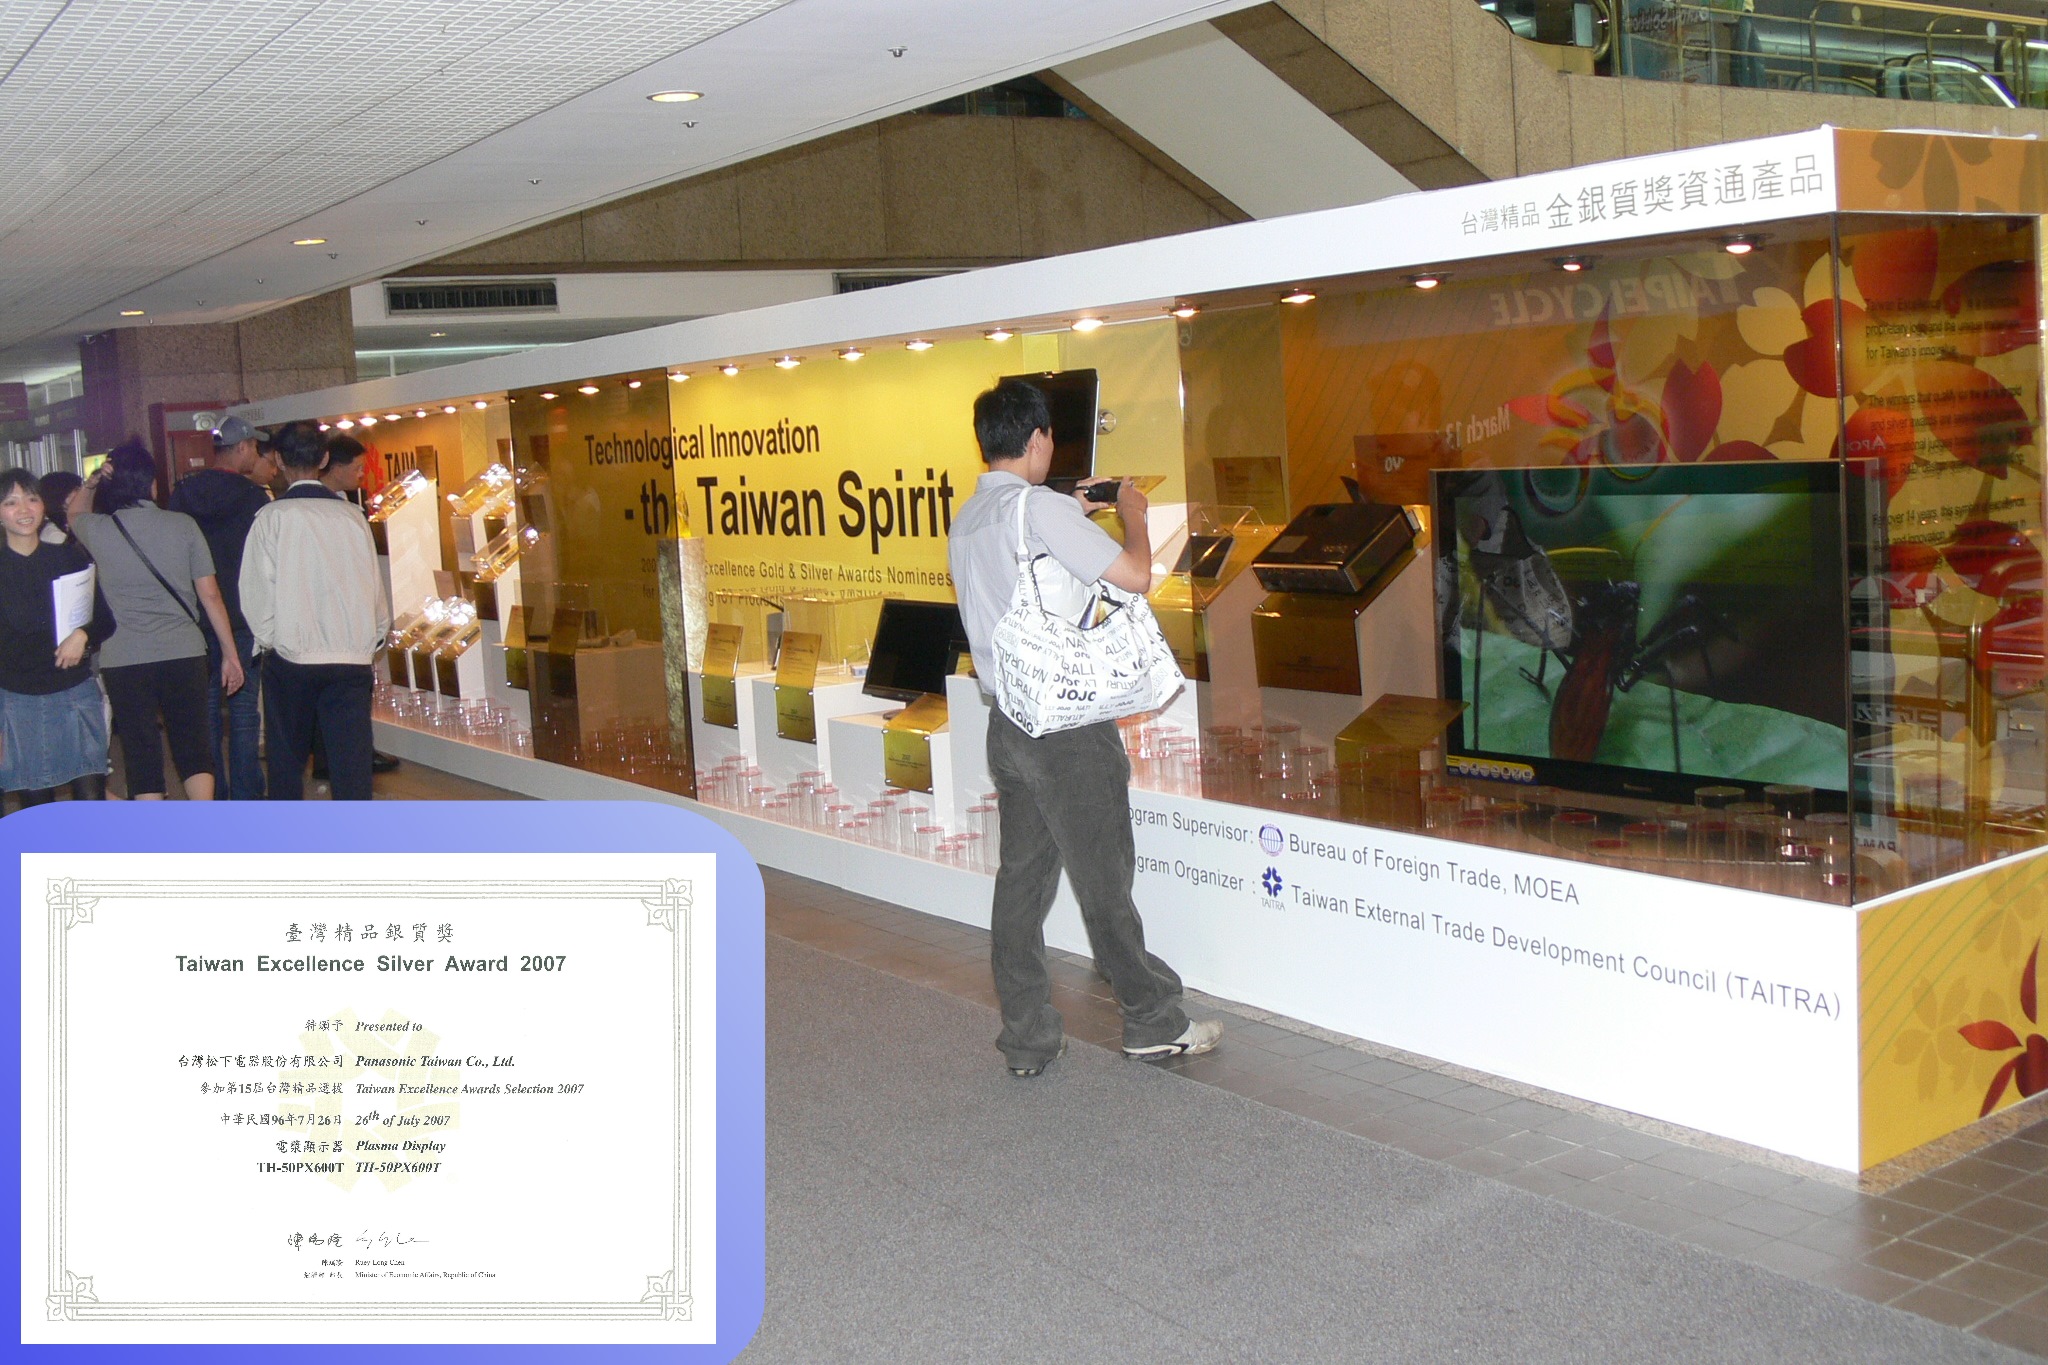 2007プラズマディスプレイが台湾エクセレンス銀賞を獲得し世界貿易センターで展示の写真